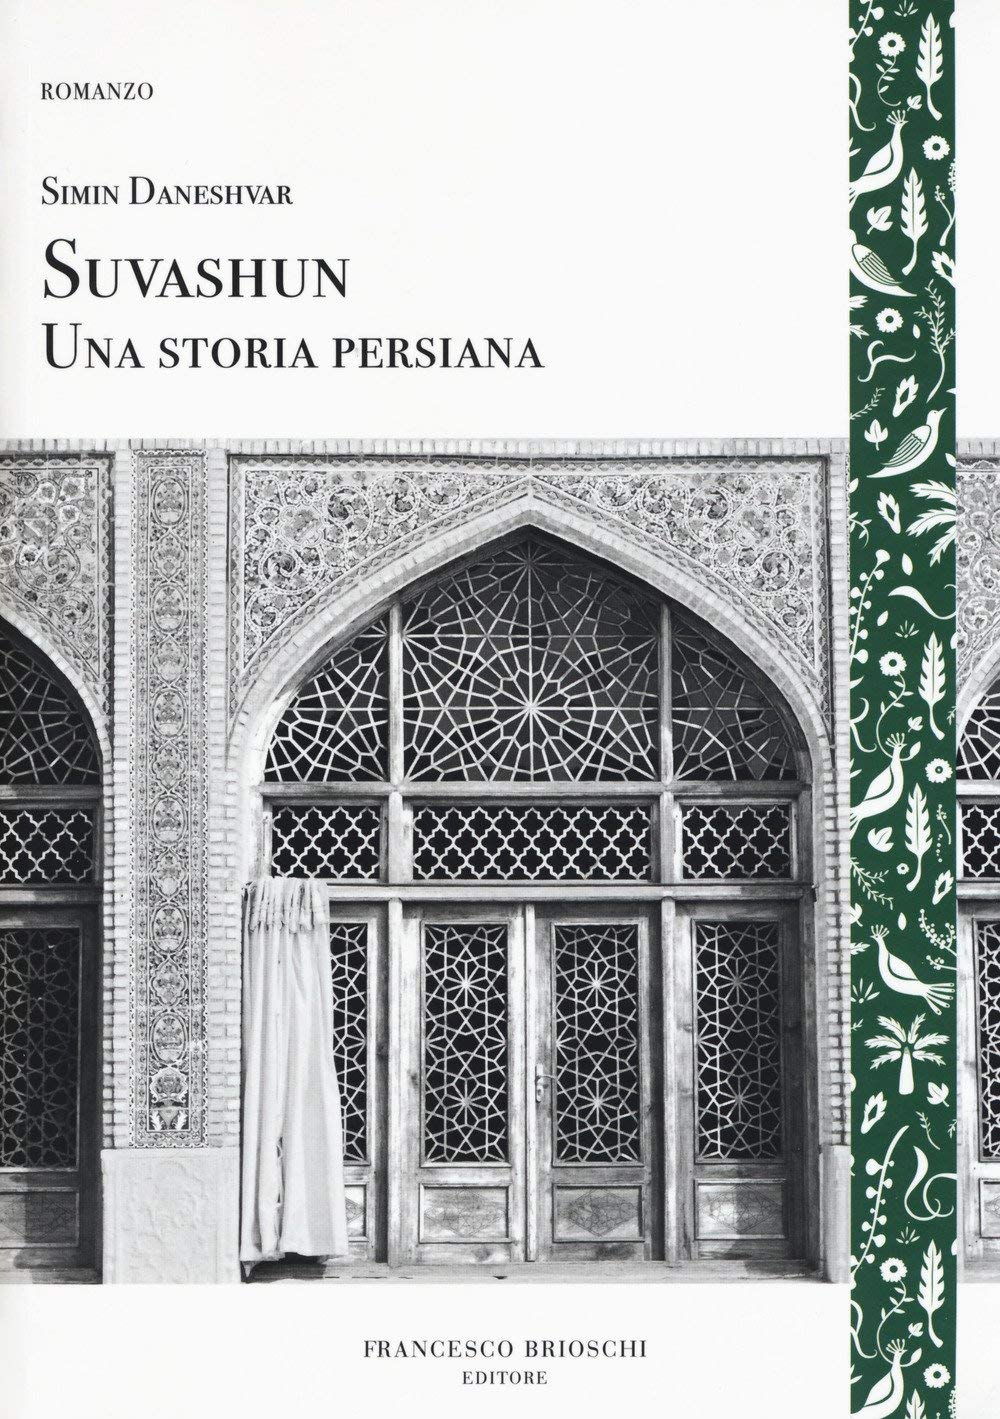 Libri Simin Daneshvar - Suvashun. Una Storia Persiana NUOVO SIGILLATO, EDIZIONE DEL 15/03/2018 SUBITO DISPONIBILE